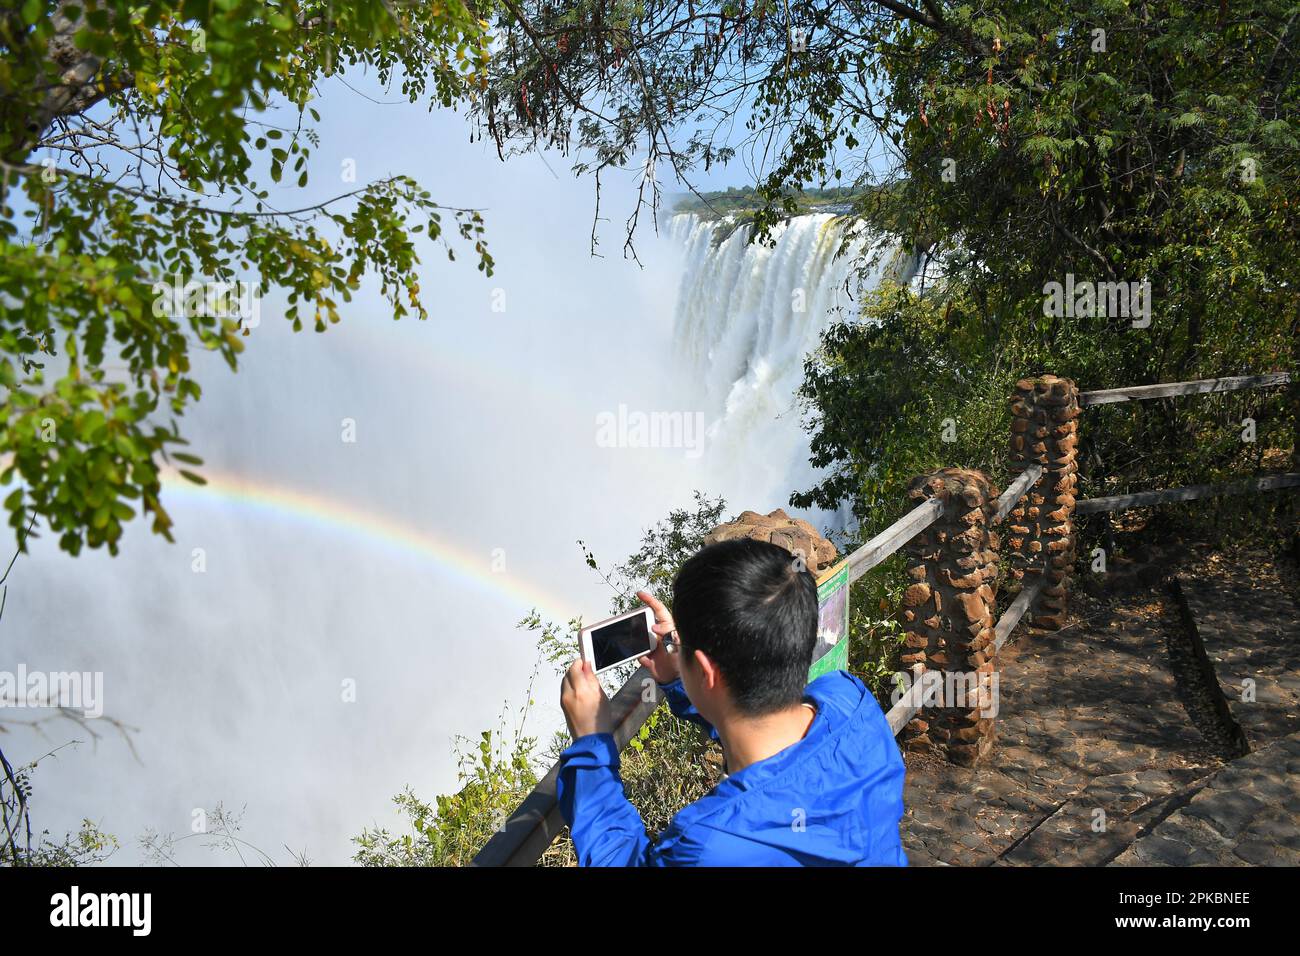 Ein Tourist macht Fotos vom Victoria-Wasserfall an der Grenze zwischen Sambia und Simbabwe. Die mächtigen Victoria Falls am Sambesi River sind einer der meistbesuchten touristischen Orte in Afrika. Victoria Falls liegt direkt an der Grenze zwischen Sambia und Simbabwe im südlichen Afrika. Es ist einer der höchsten Wasserfälle der Welt. Stockfoto